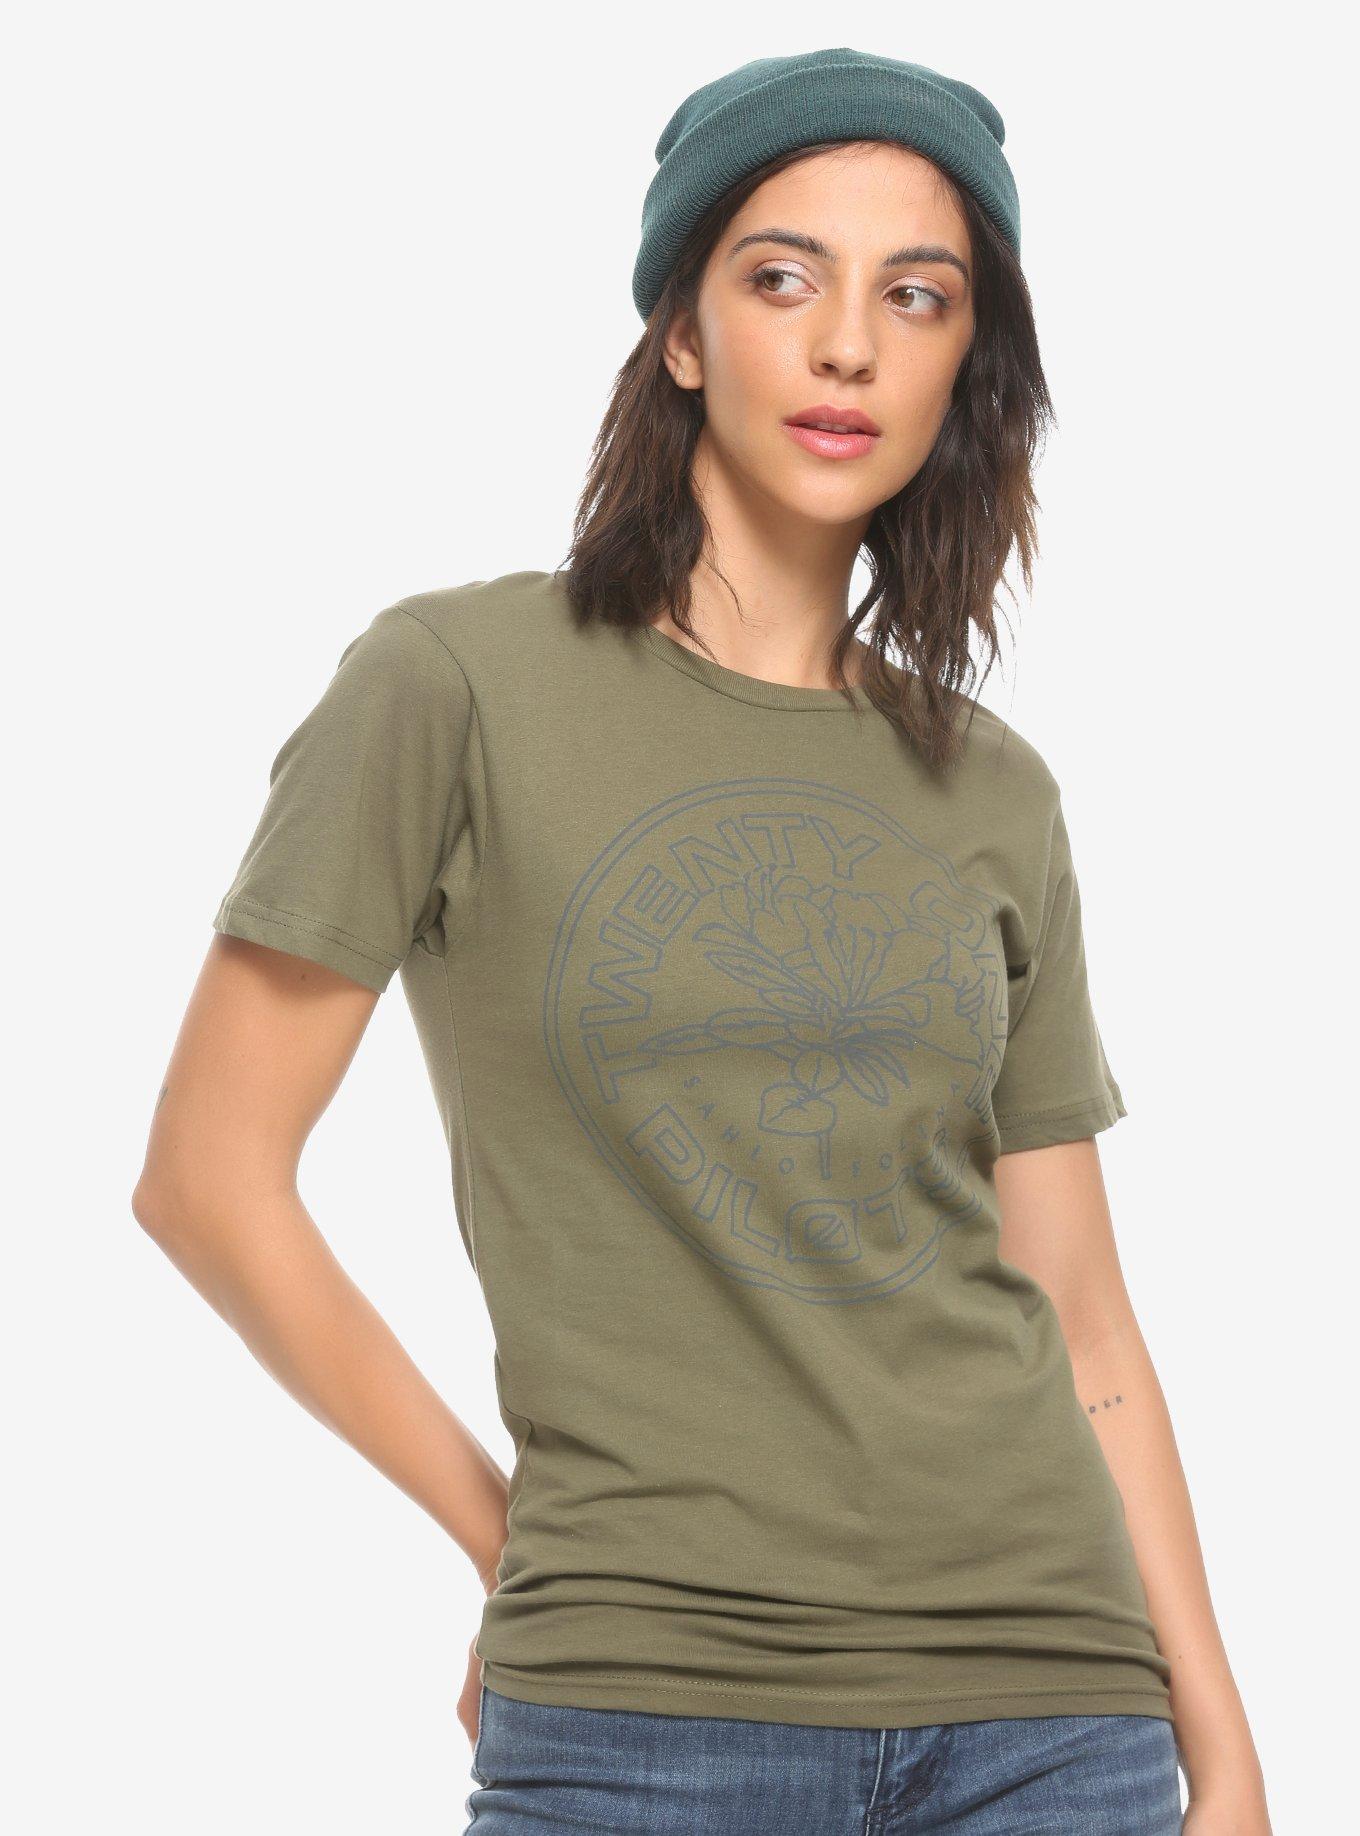 Twenty One Pilots Seal Olive Girls T-Shirt, OLIVE, hi-res